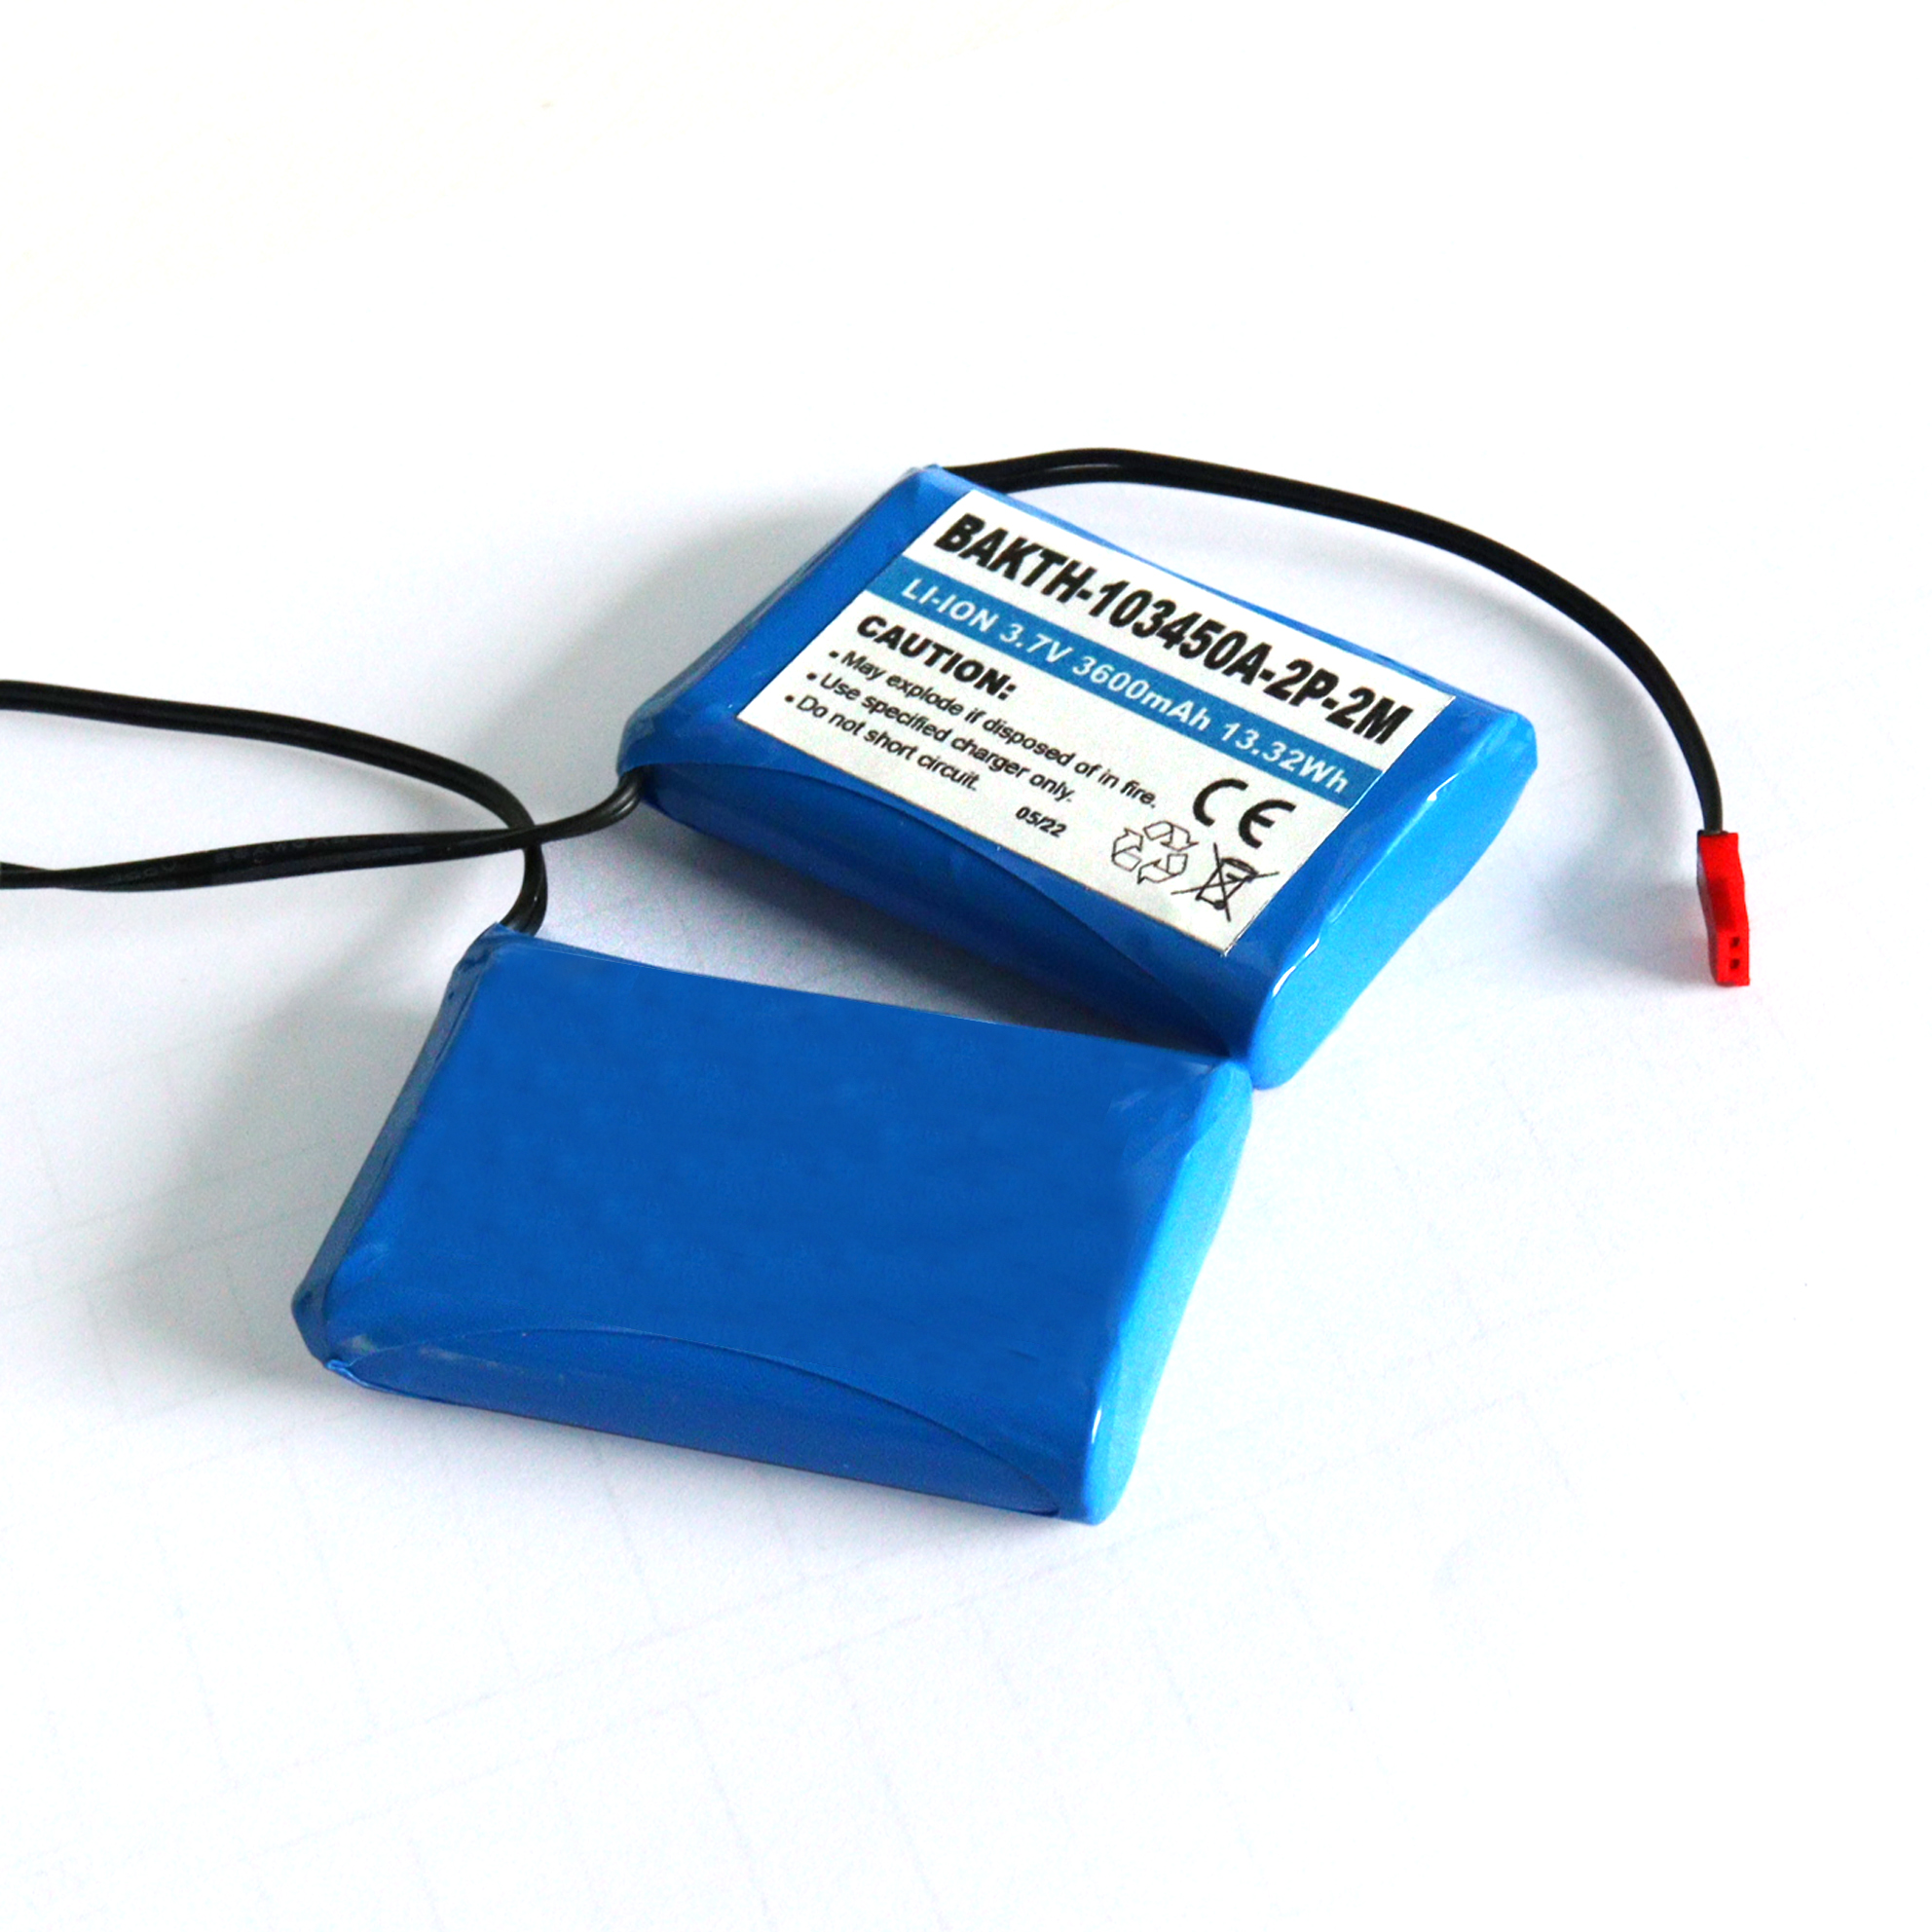 Venta caliente Batería de iones Li recargable 103450 2p 3.7V 3600mAh para electrodomésticos